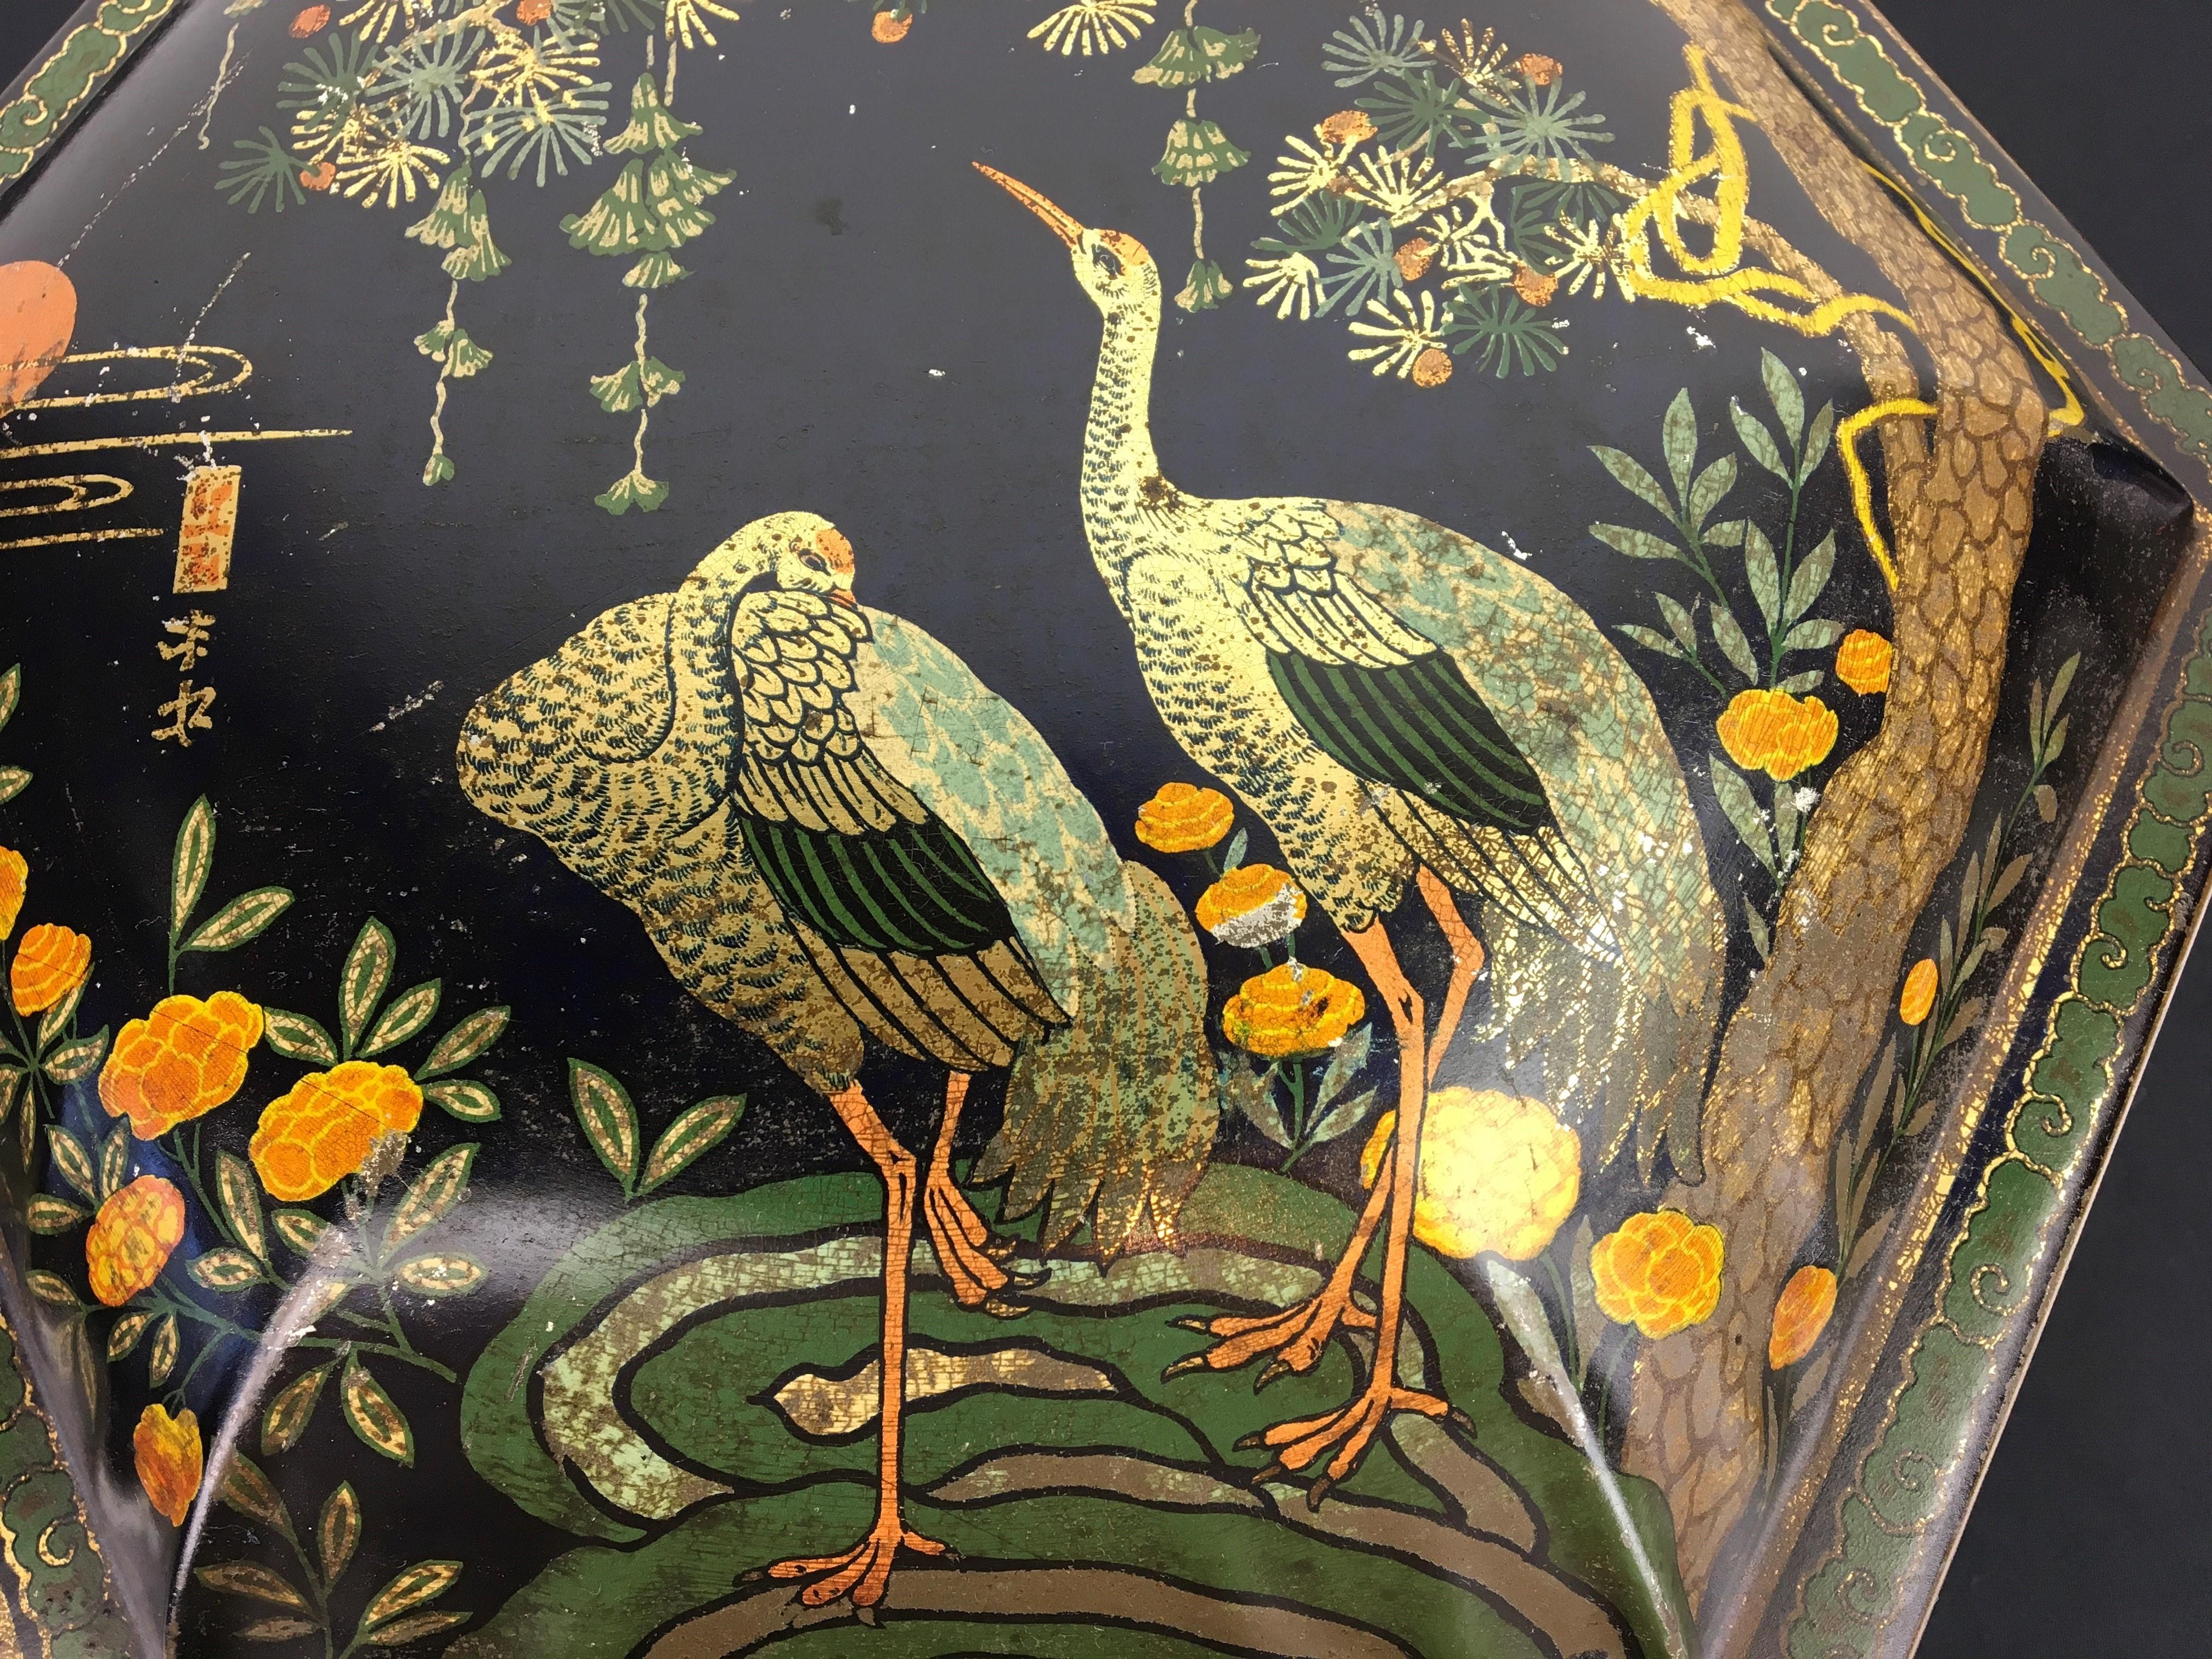 Étain ancien de style asiatique avec des grues. 
Cette boîte en fer blanc lithographique avec des oiseaux date du début du 20e siècle.
Il s'agit d'une élégante boîte de rangement en métal ancien de forme hexagonale avec couvercle.
En couleur bleu